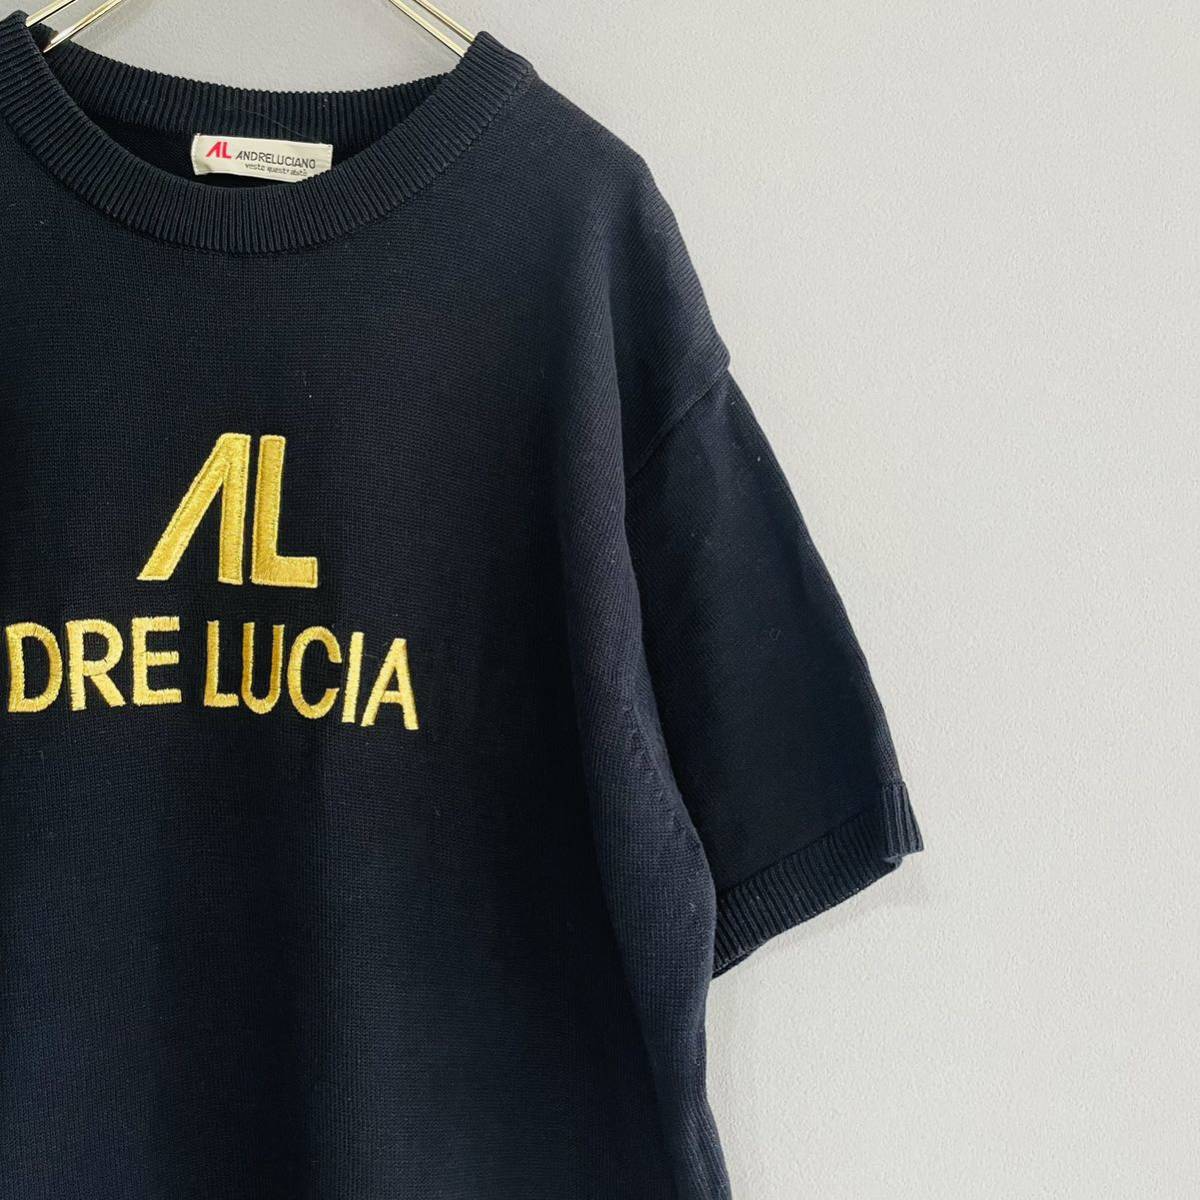 ANDRELUCIANO Andre Luciano б/у одежда золотой Logo вязаный футболка короткий рукав вязаный б/у полный gi